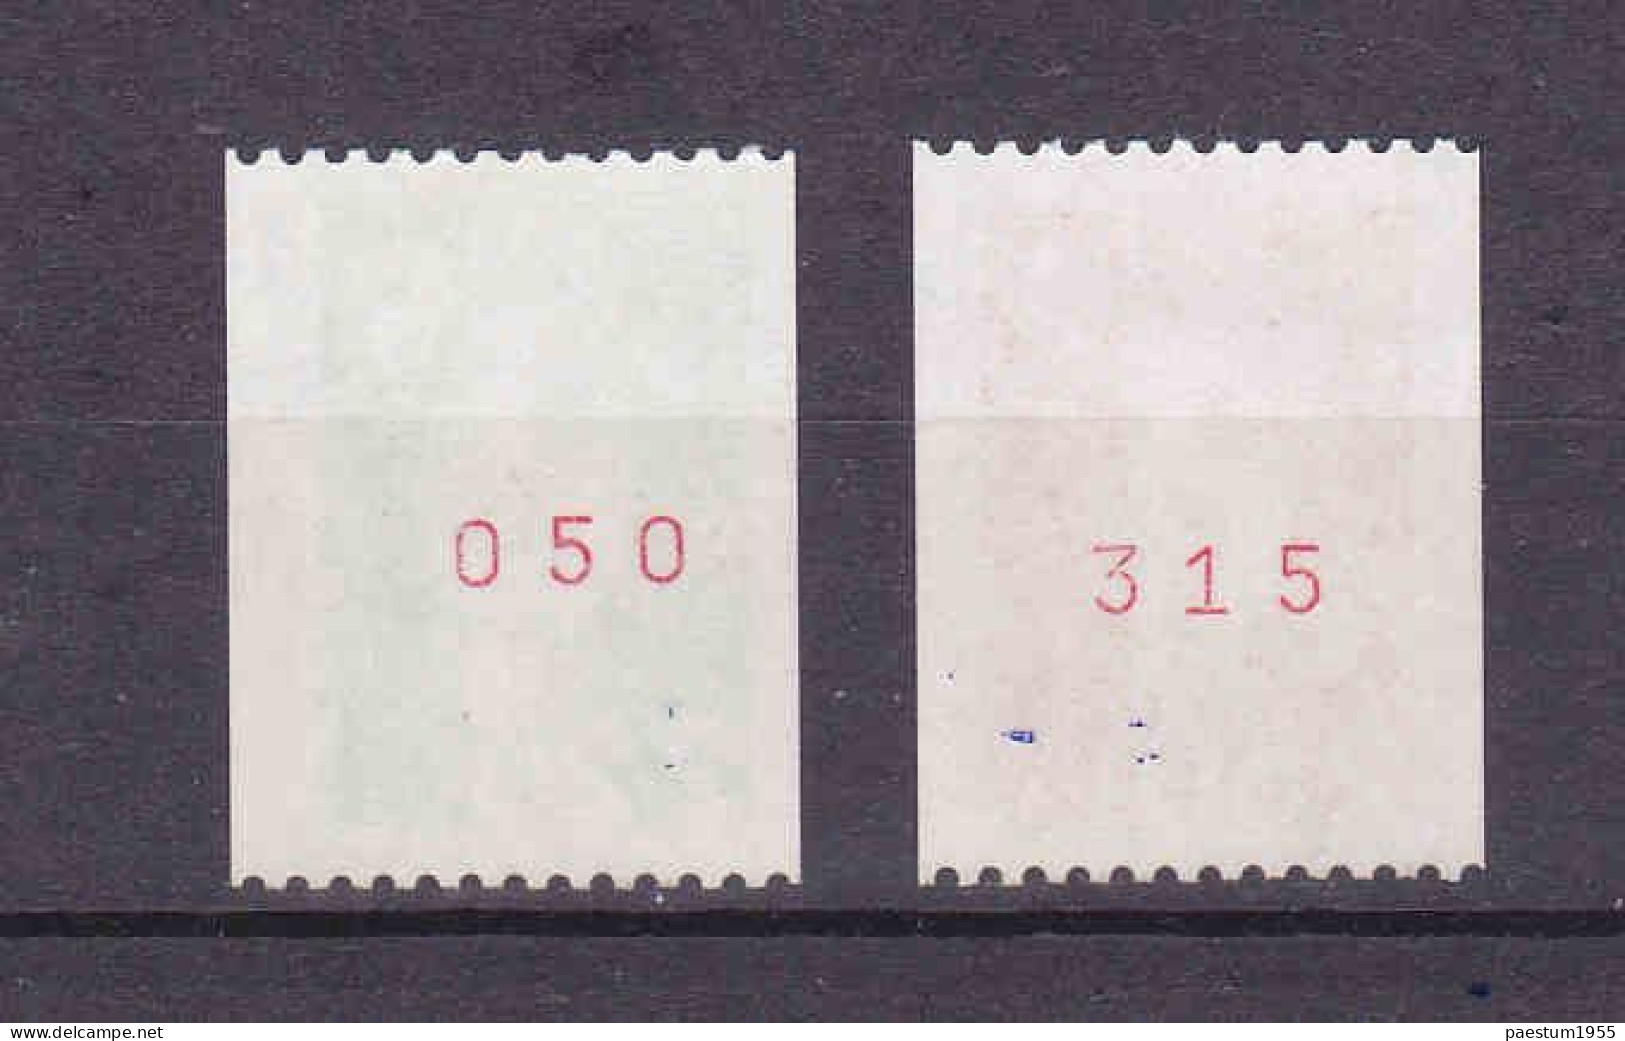 Série De 2 Timbres Roulette France 1991 Marianne De BRIAT Bicentenaire 2f20 Vert 2f50 Rouge N° Rouge Au Verso 2718 2719 - Coil Stamps